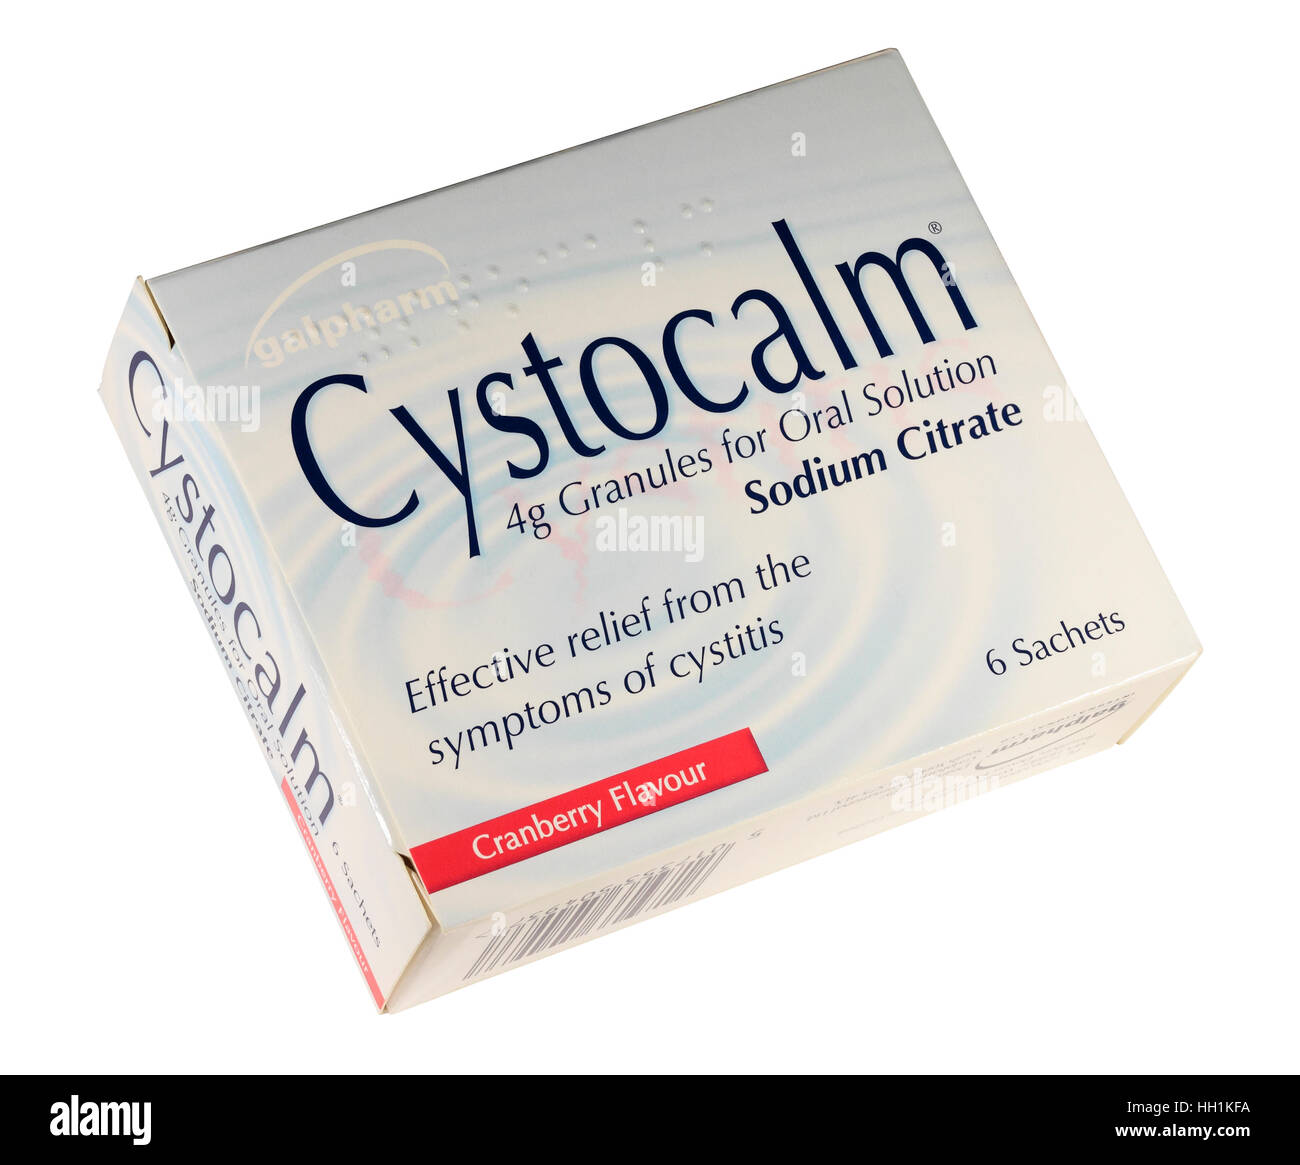 Schachtel mit Cranberry Geschmack Cystocalm Beutel für die Behandlung von Blasenentzündungen isoliert auf weißem Hintergrund Stockfoto